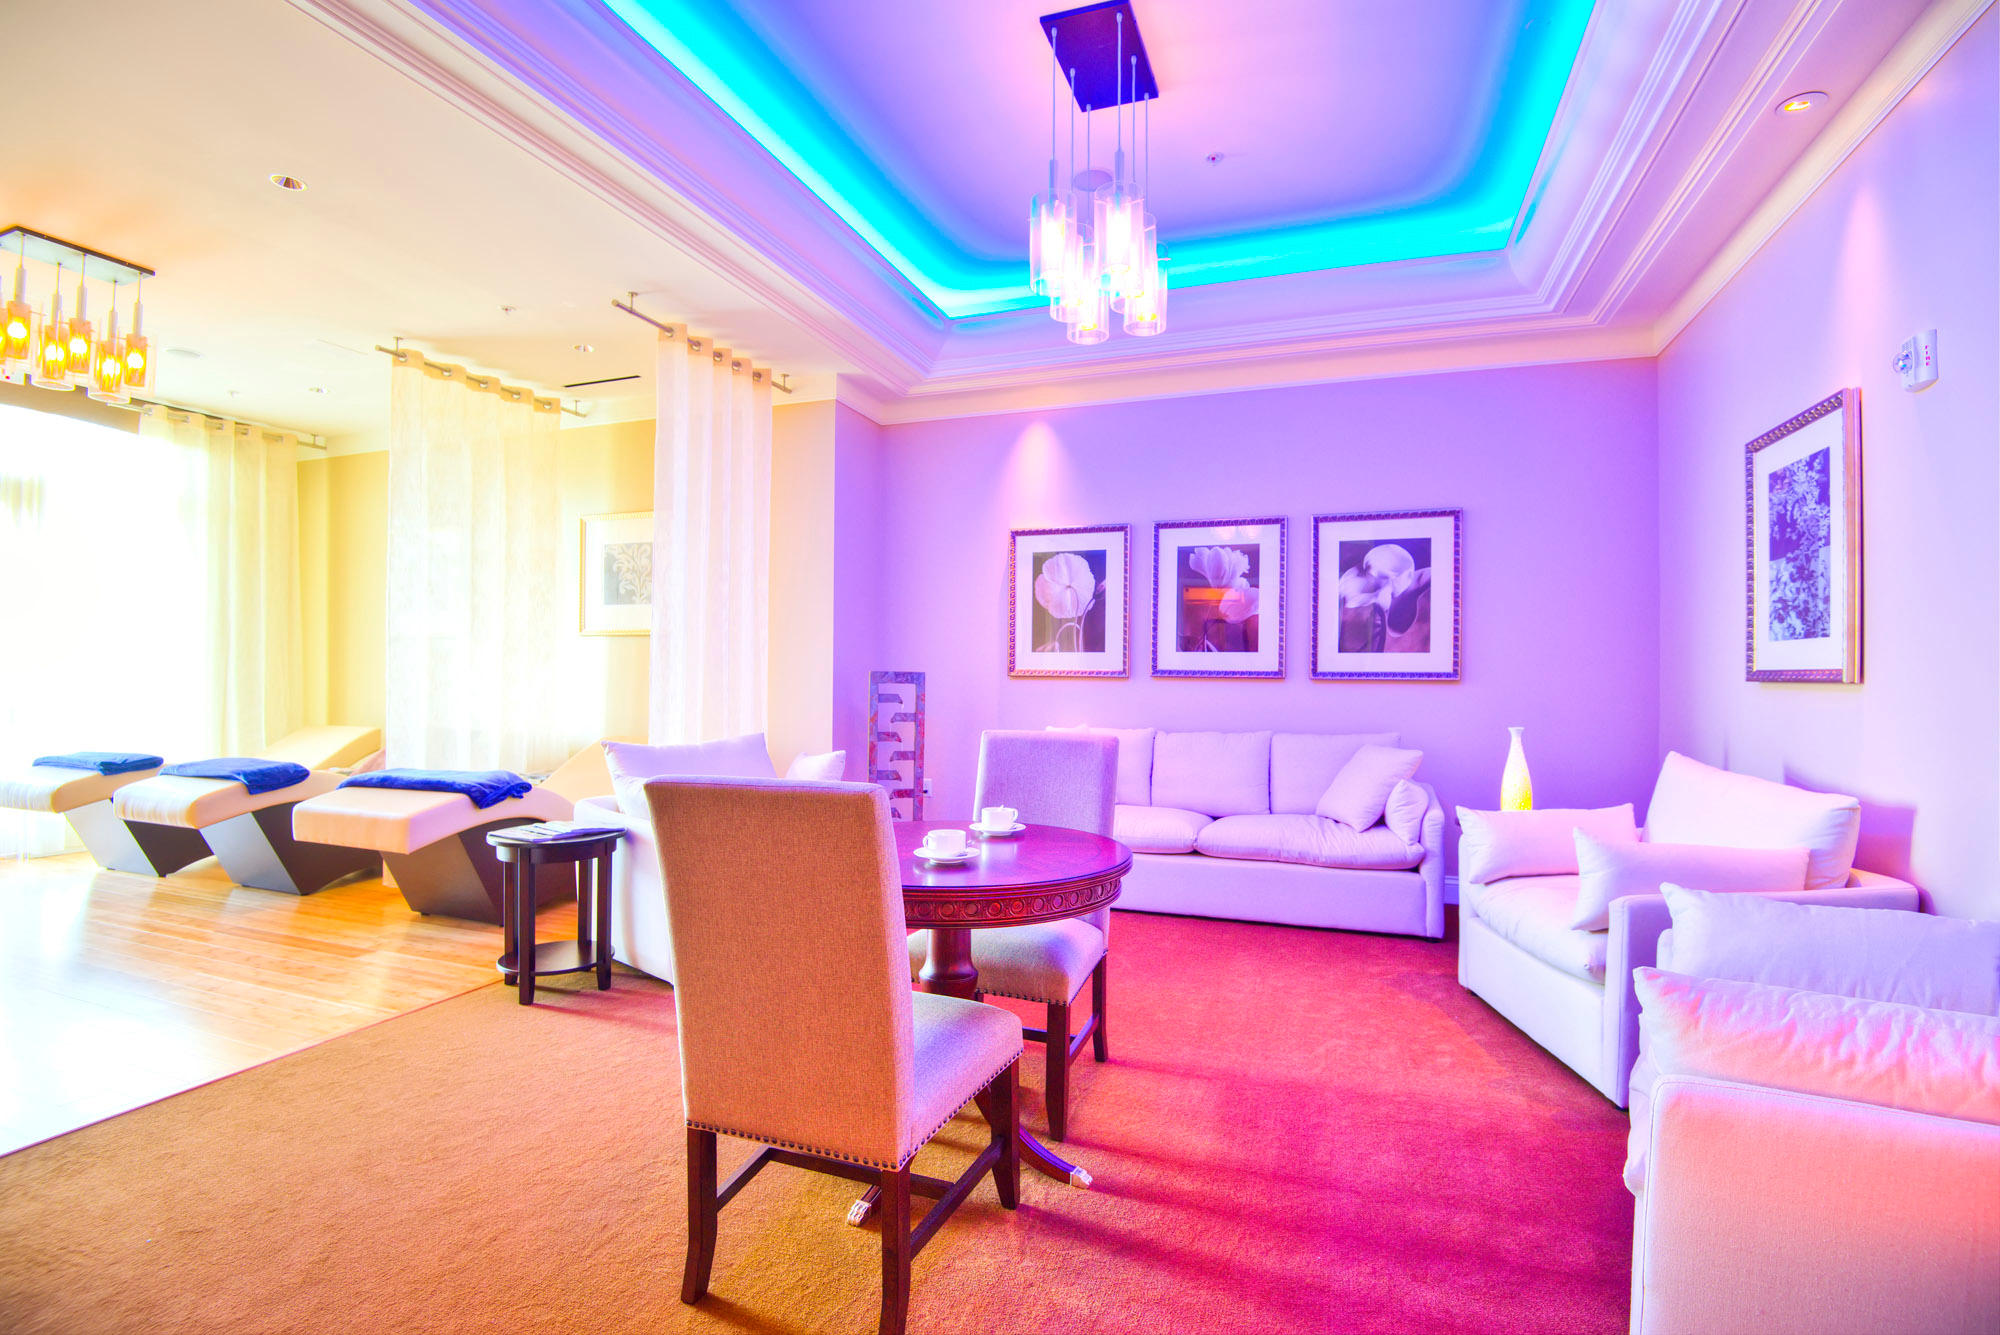 Tranquility Lounge Waldorf Astoria Spa Orlando Orlando (407)597-5360